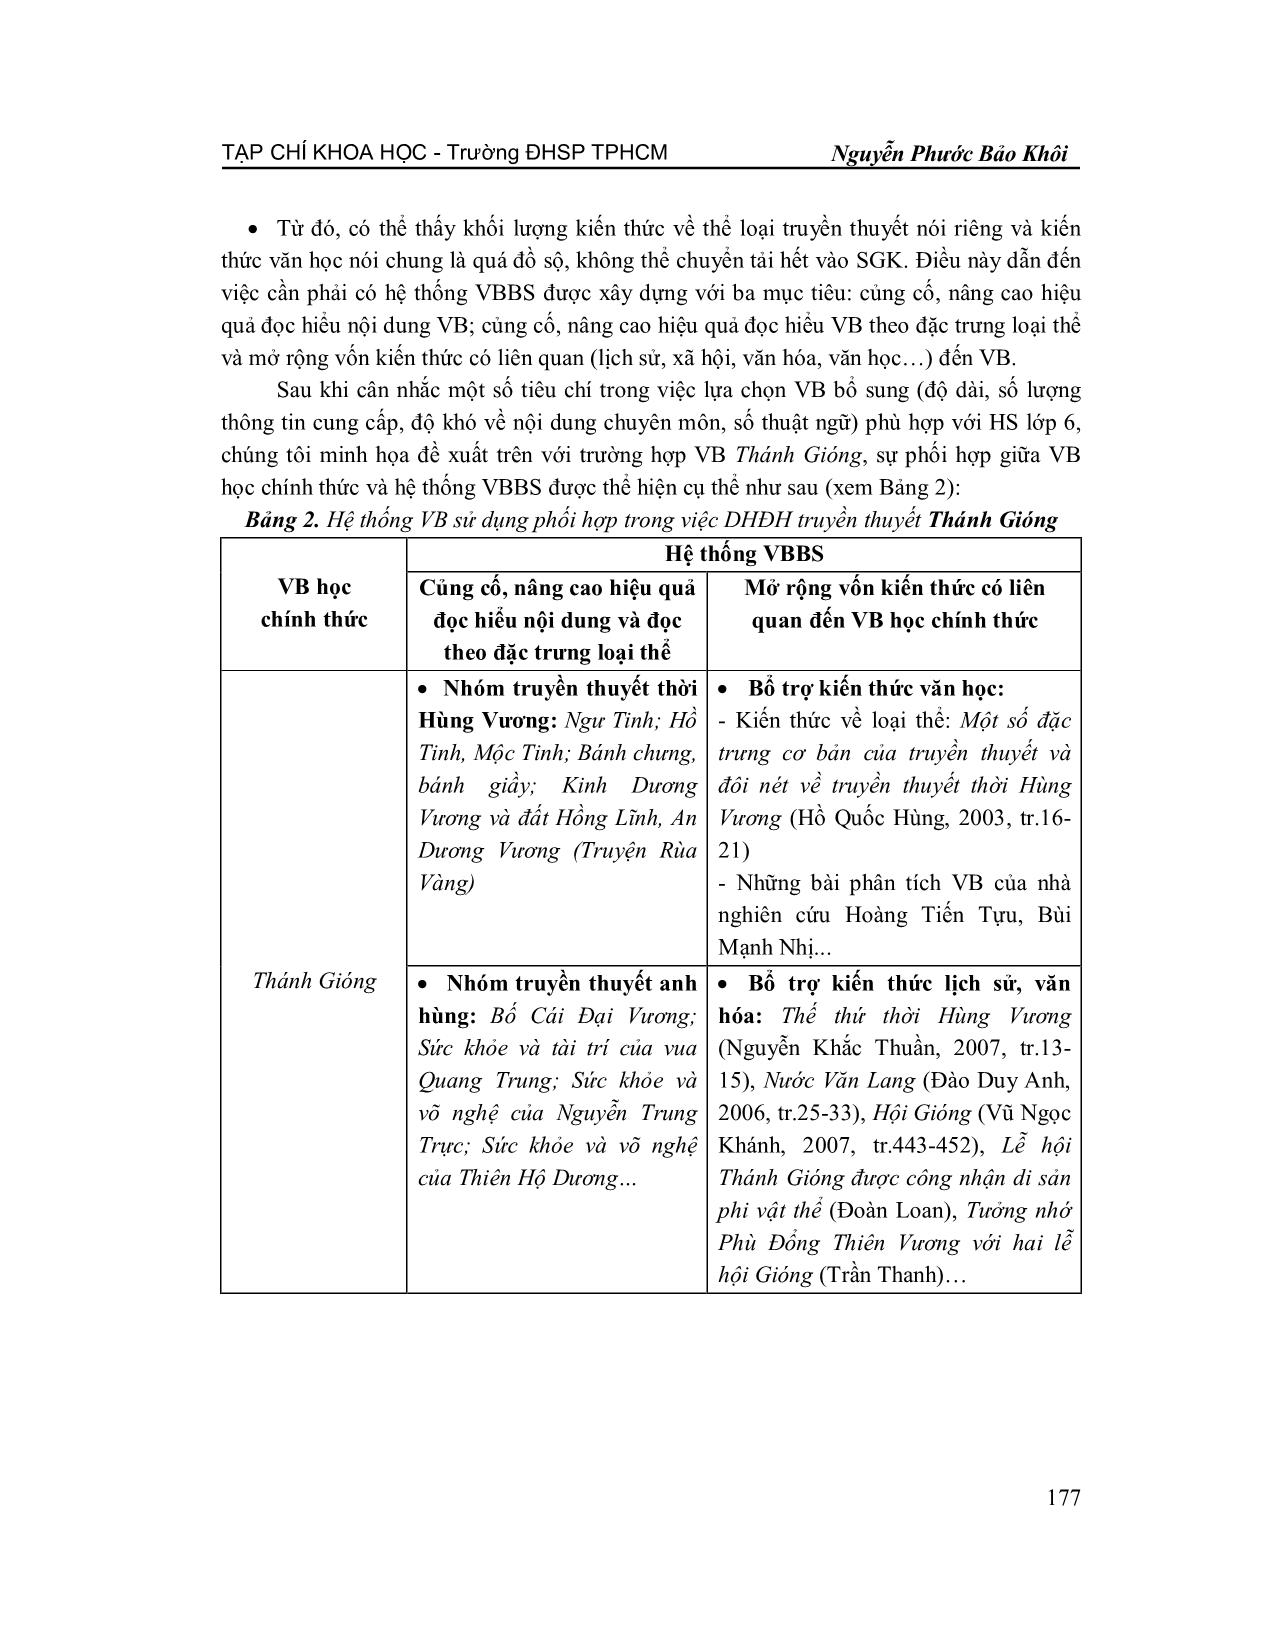 Sử dụng hệ thống văn bản trong dạy học đọc hiểu truyền thuyết trang 5